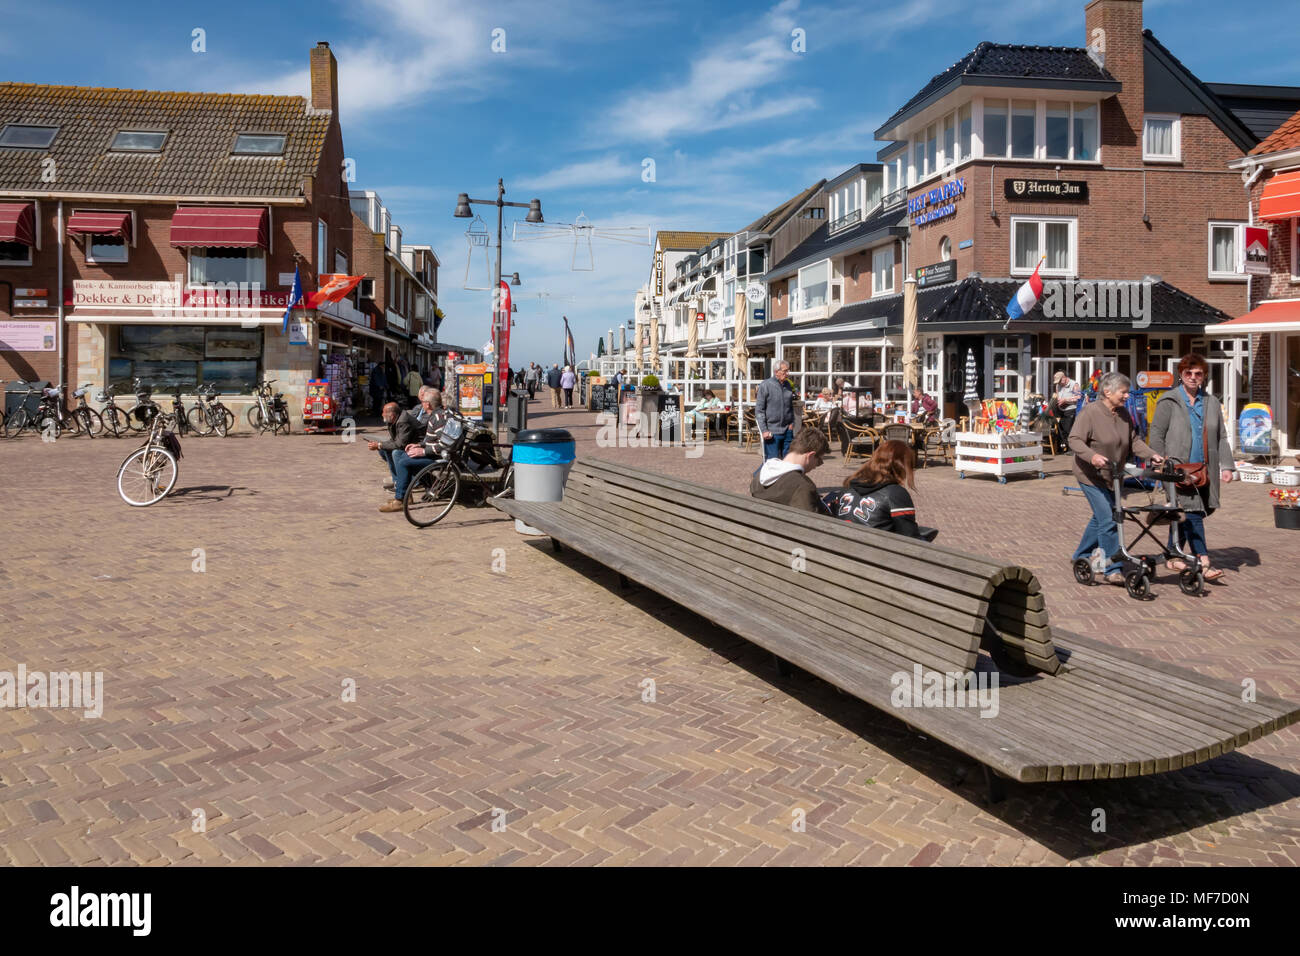 Egmond aan Zee , Noord Holland / Paesi Bassi - 24 Aprile 2018 : una popolare località balneare sulla costa nord ovest dell'Olanda. I turisti gustando un drink presso il locale cafè e ristoranti. Foto Stock